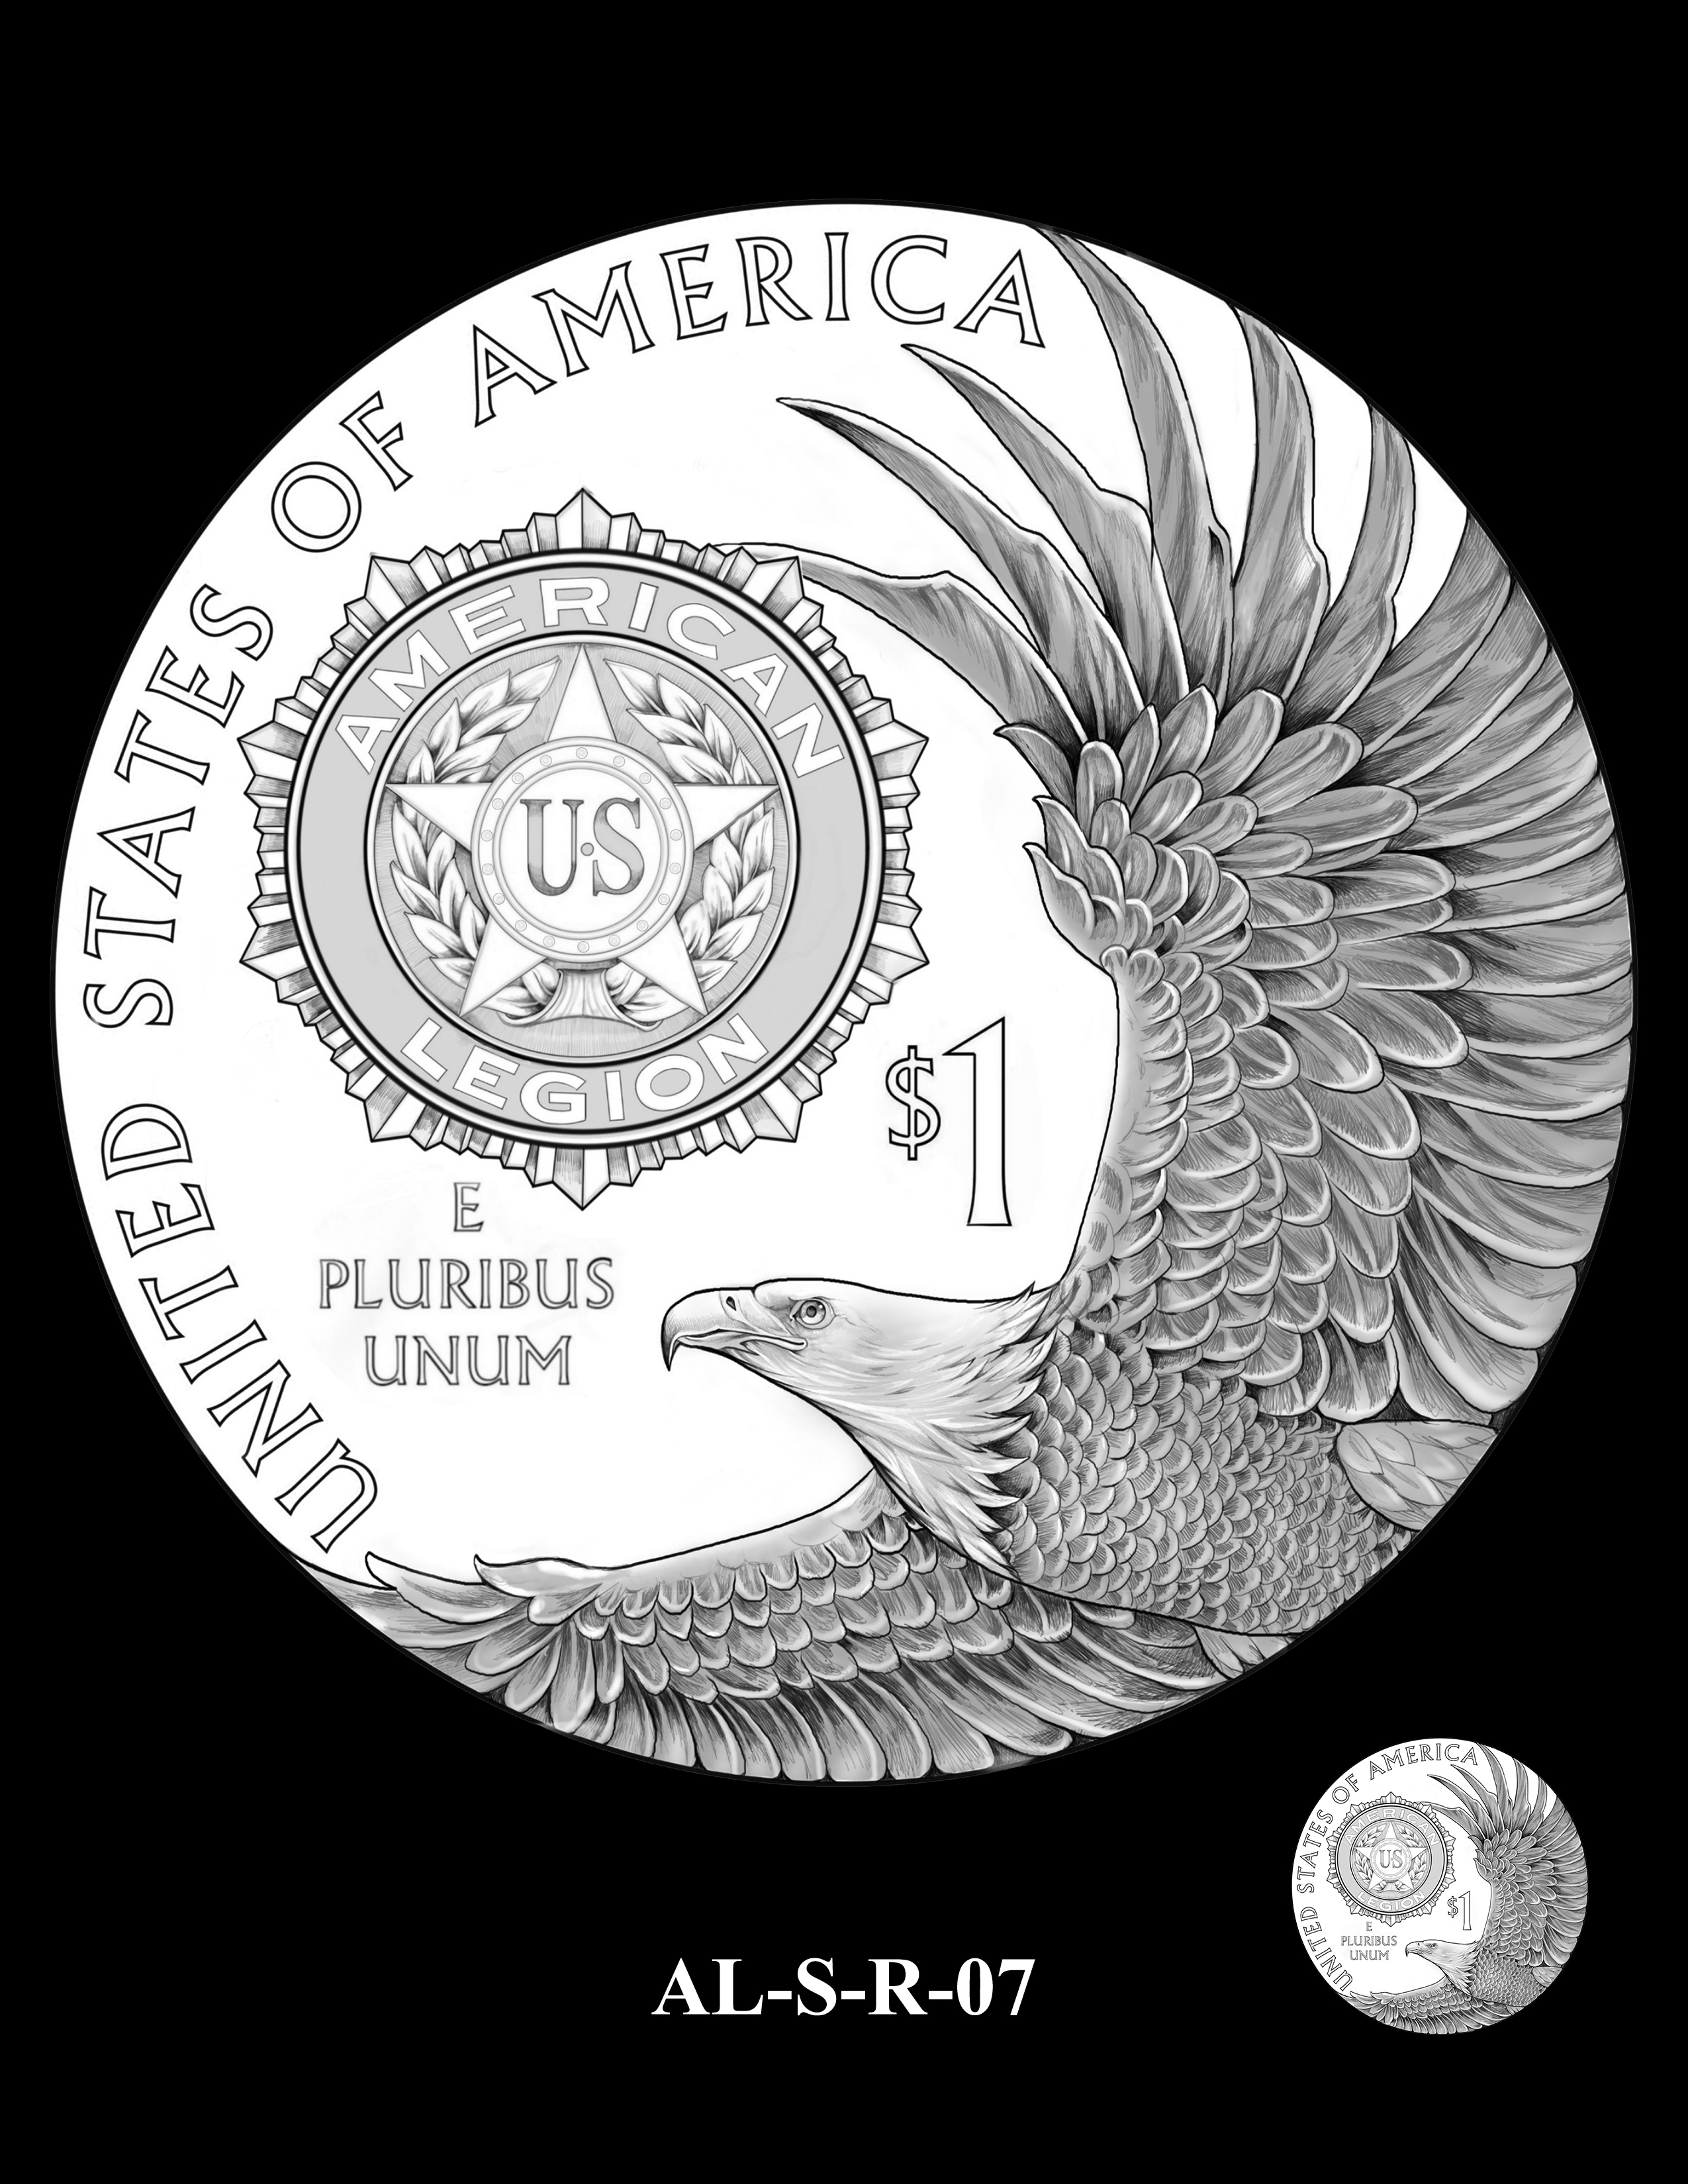 AL-S-R-07 -- 2019 American Legion 100th Anniversary Commemorative Coin Program - Silver Reverse